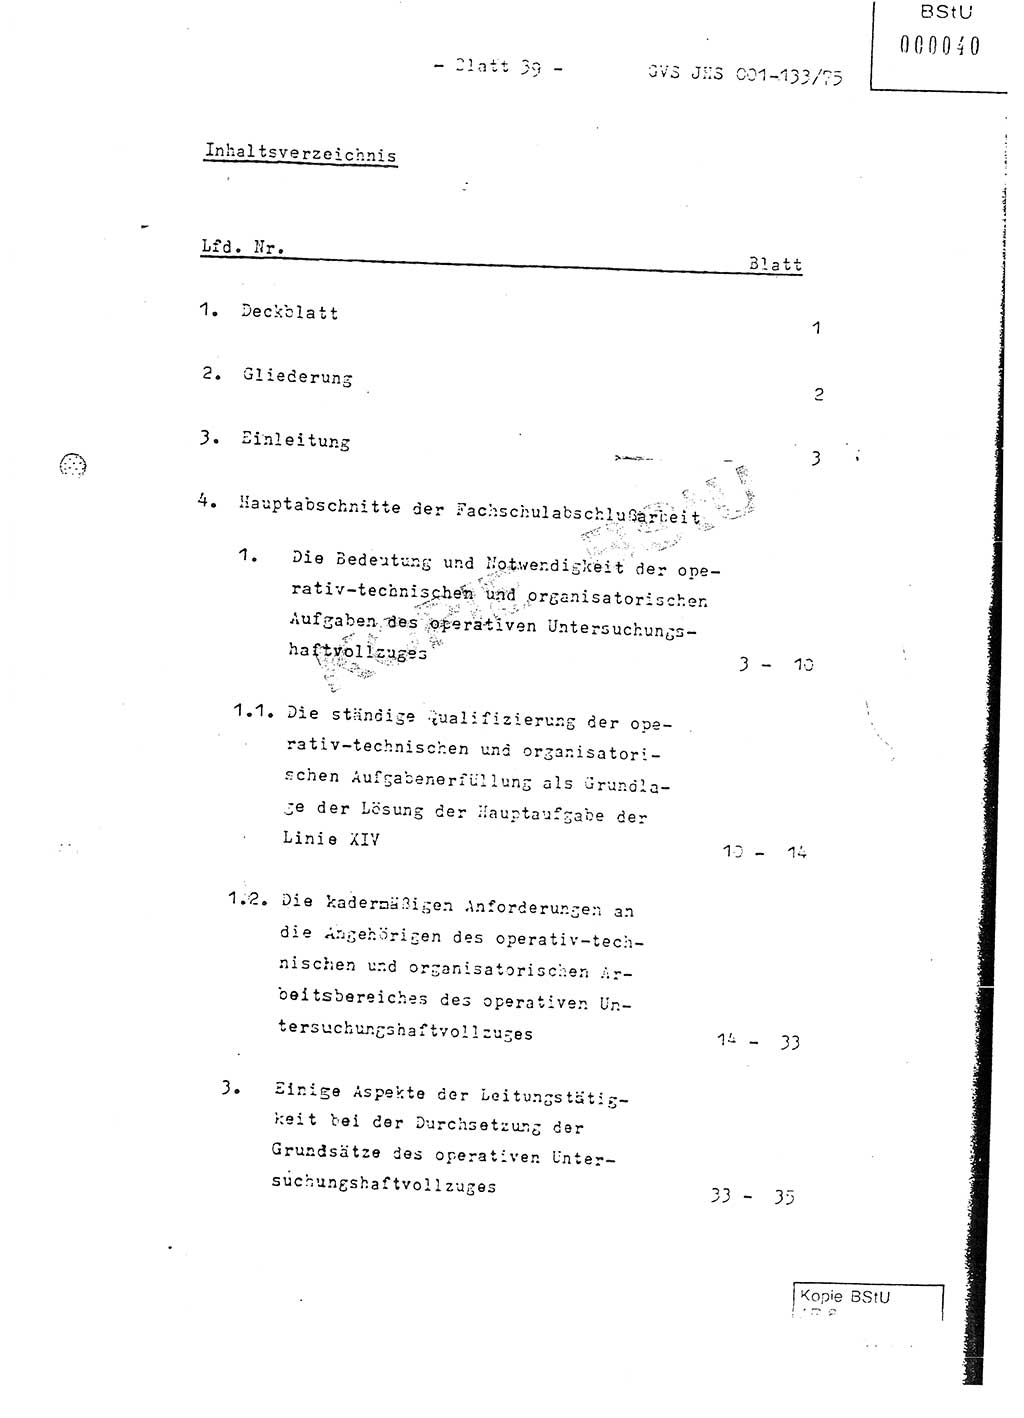 Fachschulabschlußarbeit Major Werner Braun (Abt. ⅩⅣ), Hauptmann Klaus Zeiß (Abt. ⅩⅣ), Ministerium für Staatssicherheit (MfS) [Deutsche Demokratische Republik (DDR)], Juristische Hochschule (JHS), Geheime Verschlußsache (GVS) 001-133/75, Potsdam 1976, Blatt 39 (FS-Abschl.-Arb. MfS DDR JHS GVS 001-133/75 1976, Bl. 39)